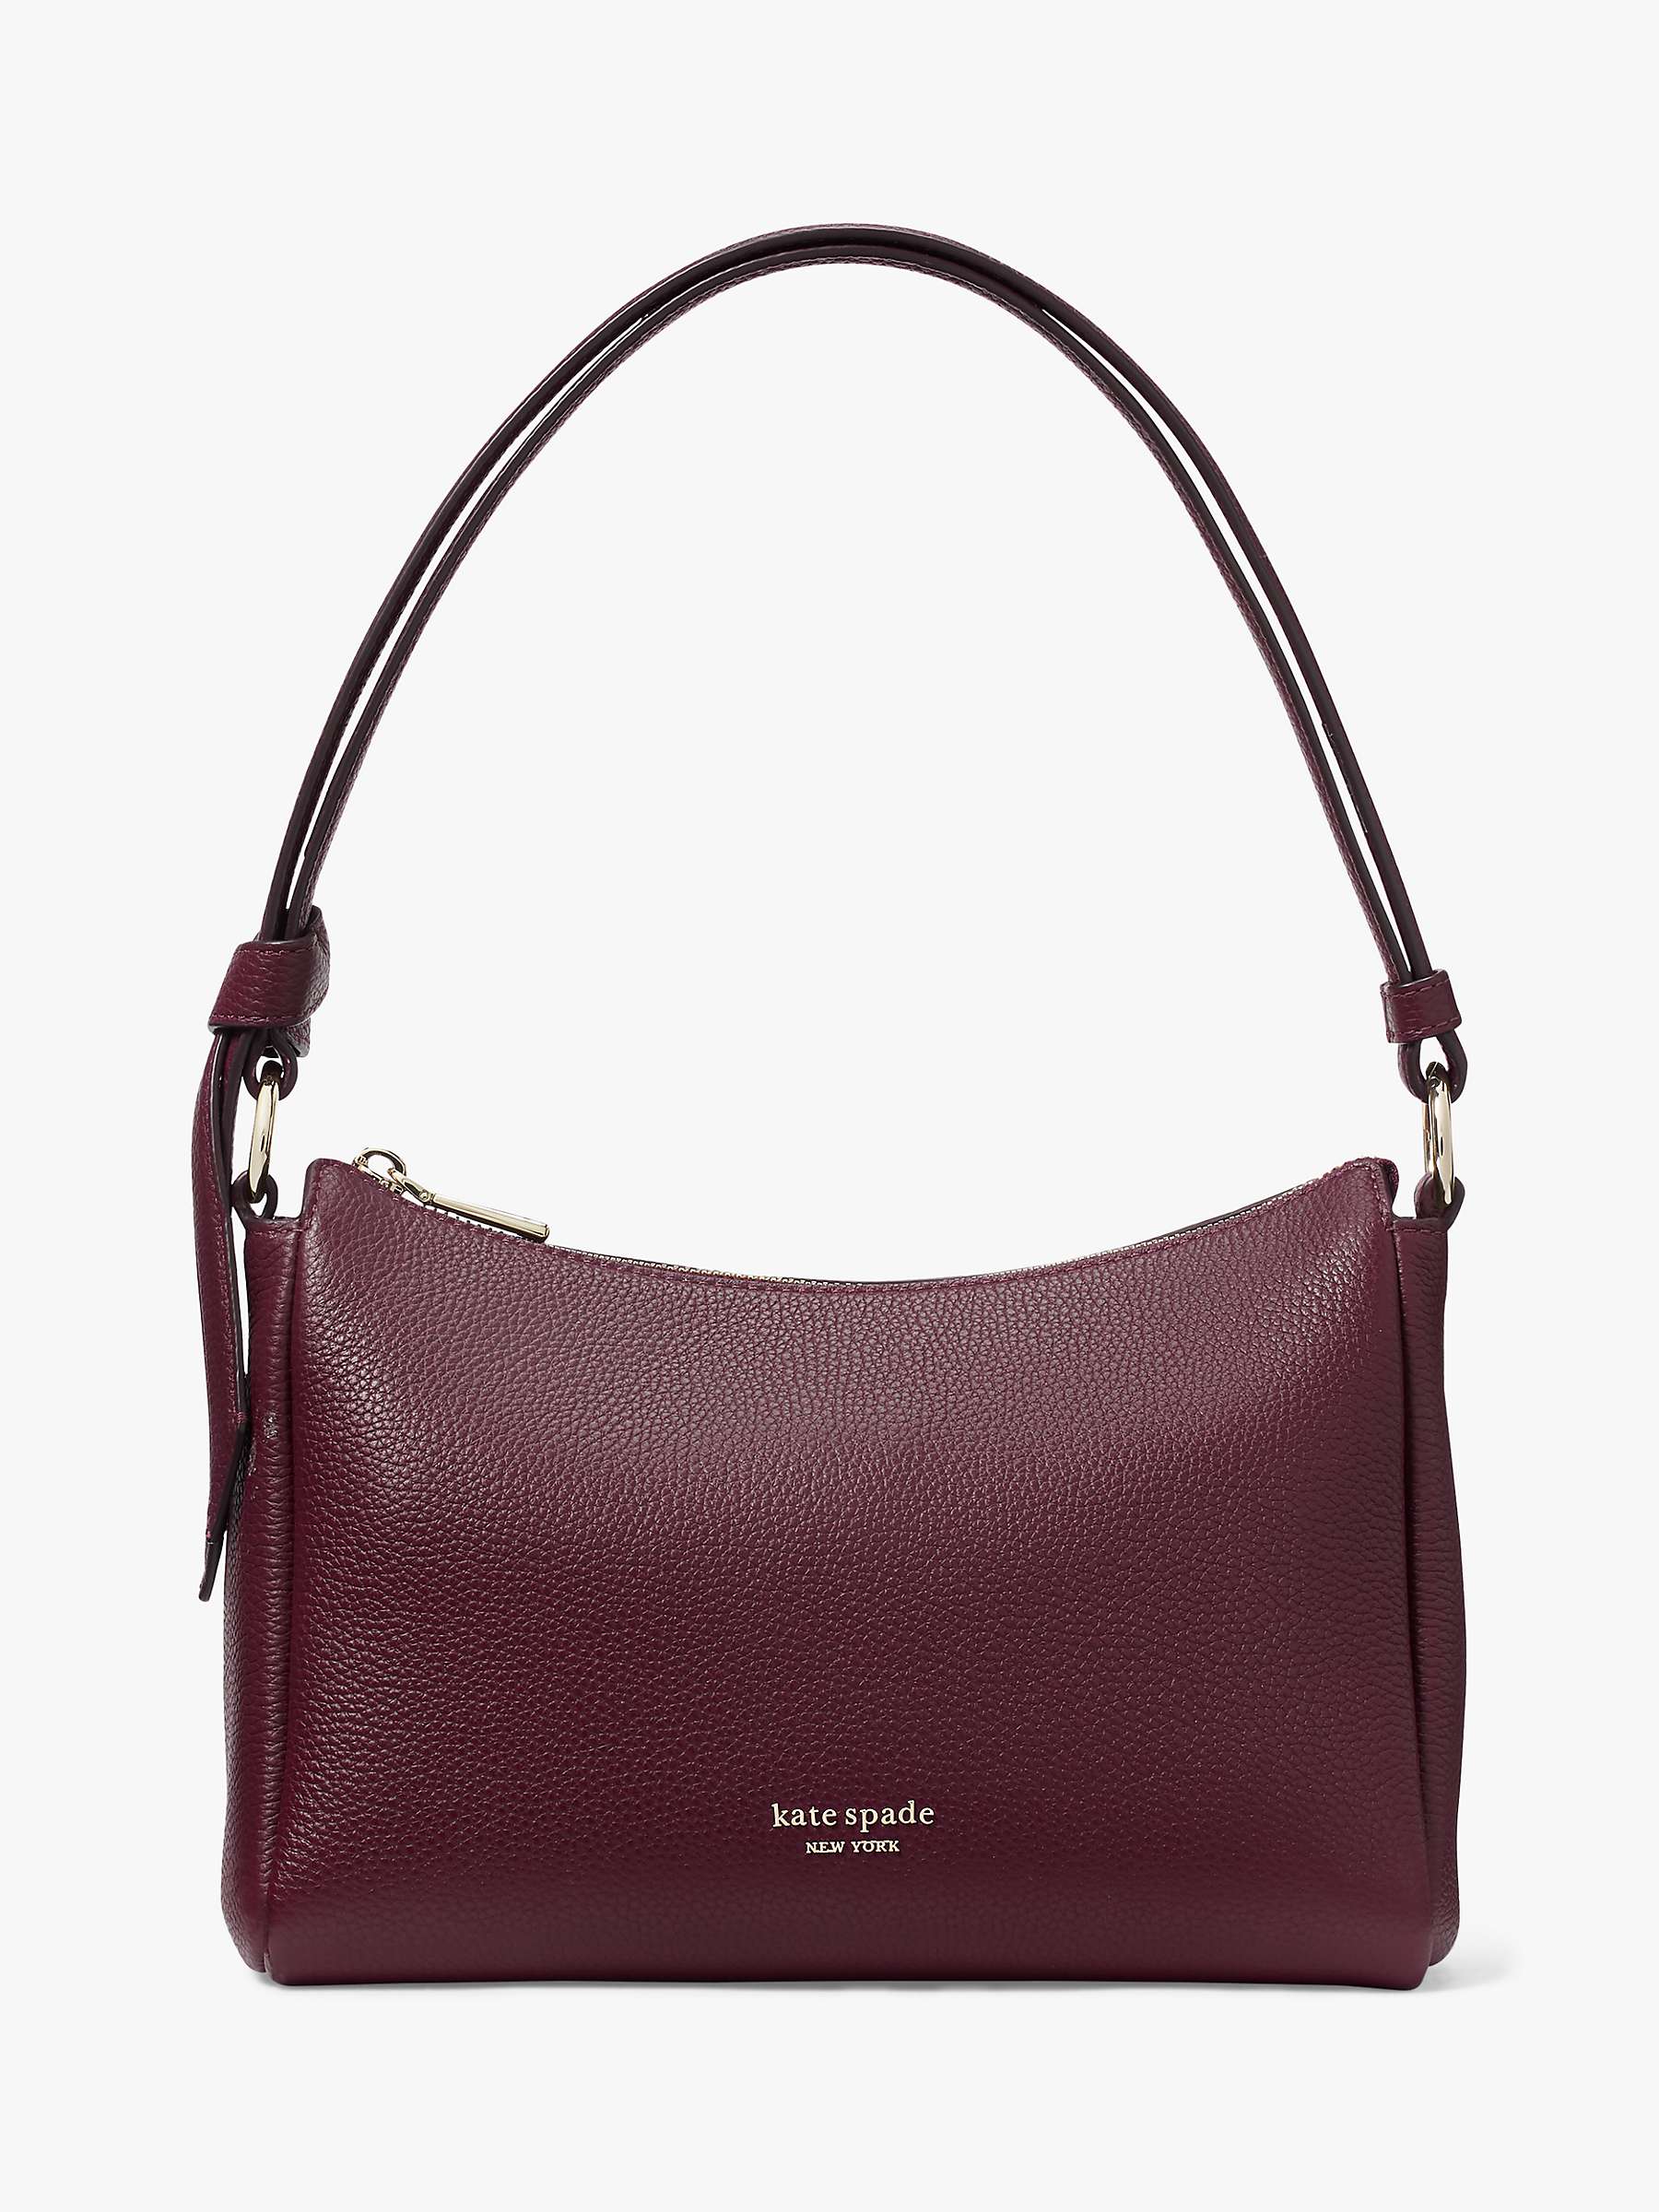 Buy kate spade new york Knott Medium Leather Shoulder Bag Online at johnlewis.com